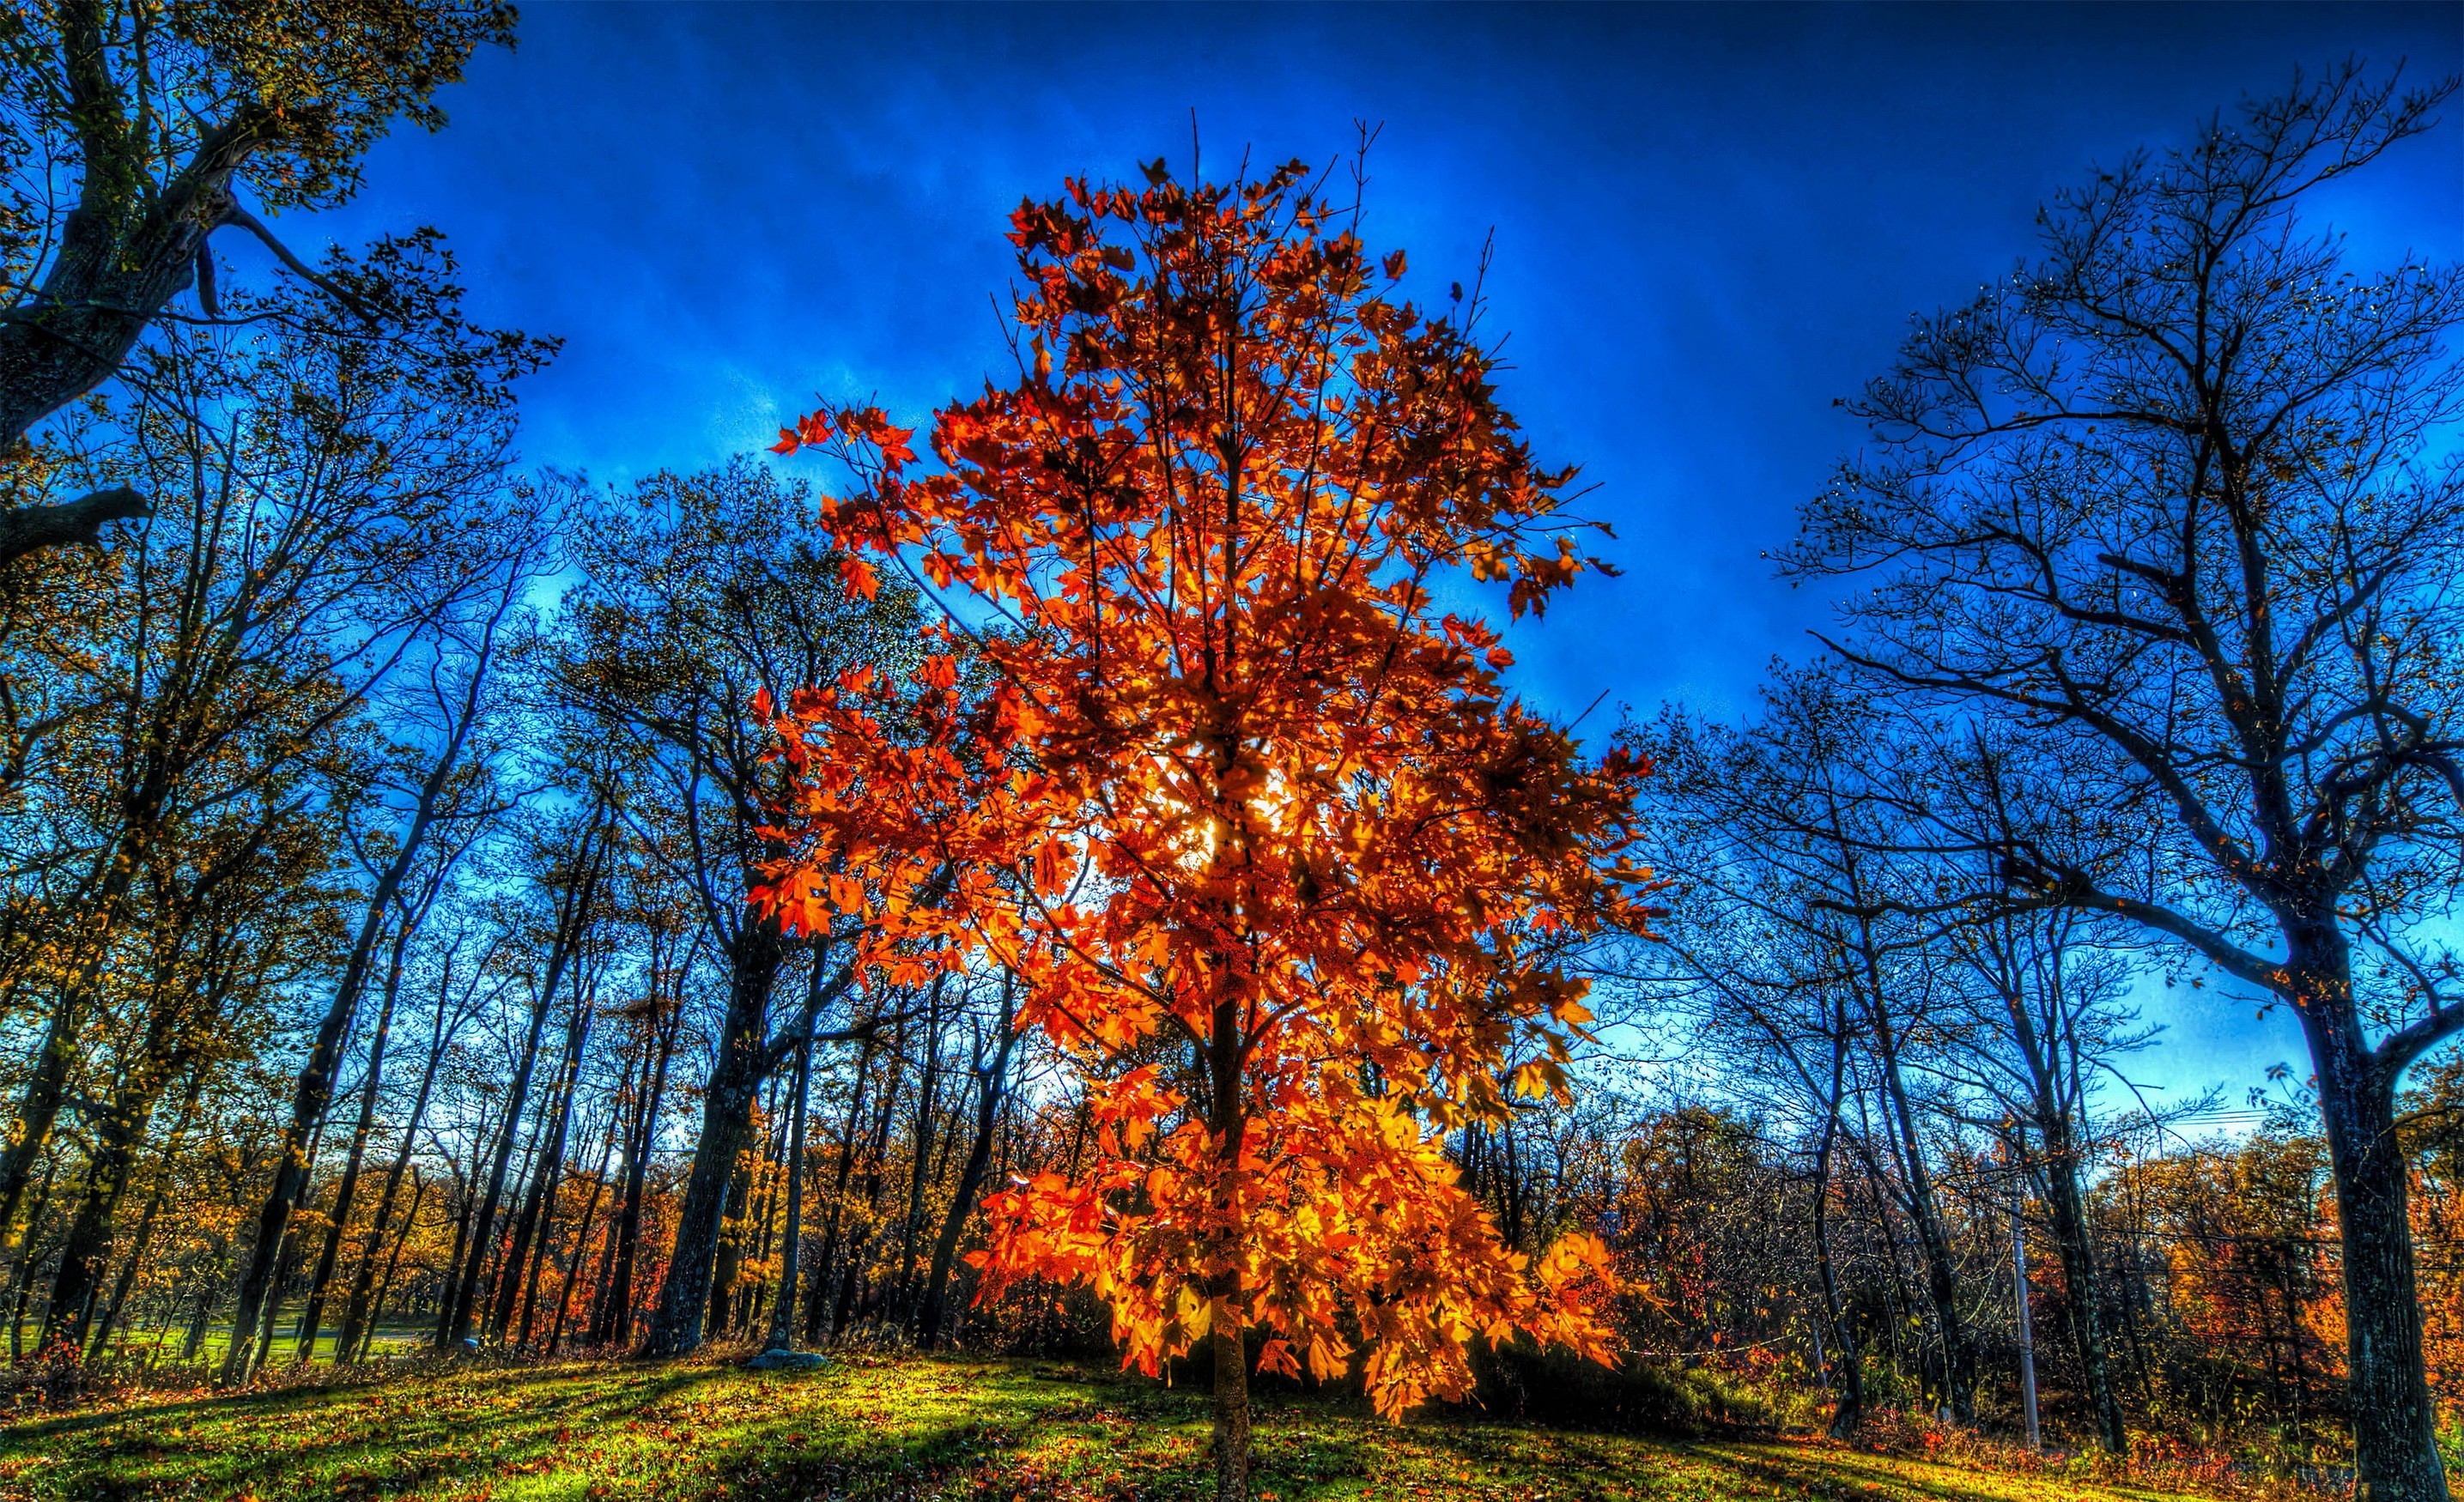 Скачать обои бесплатно Деревья, Осень, Дерево, Древесина, Земля/природа картинка на рабочий стол ПК